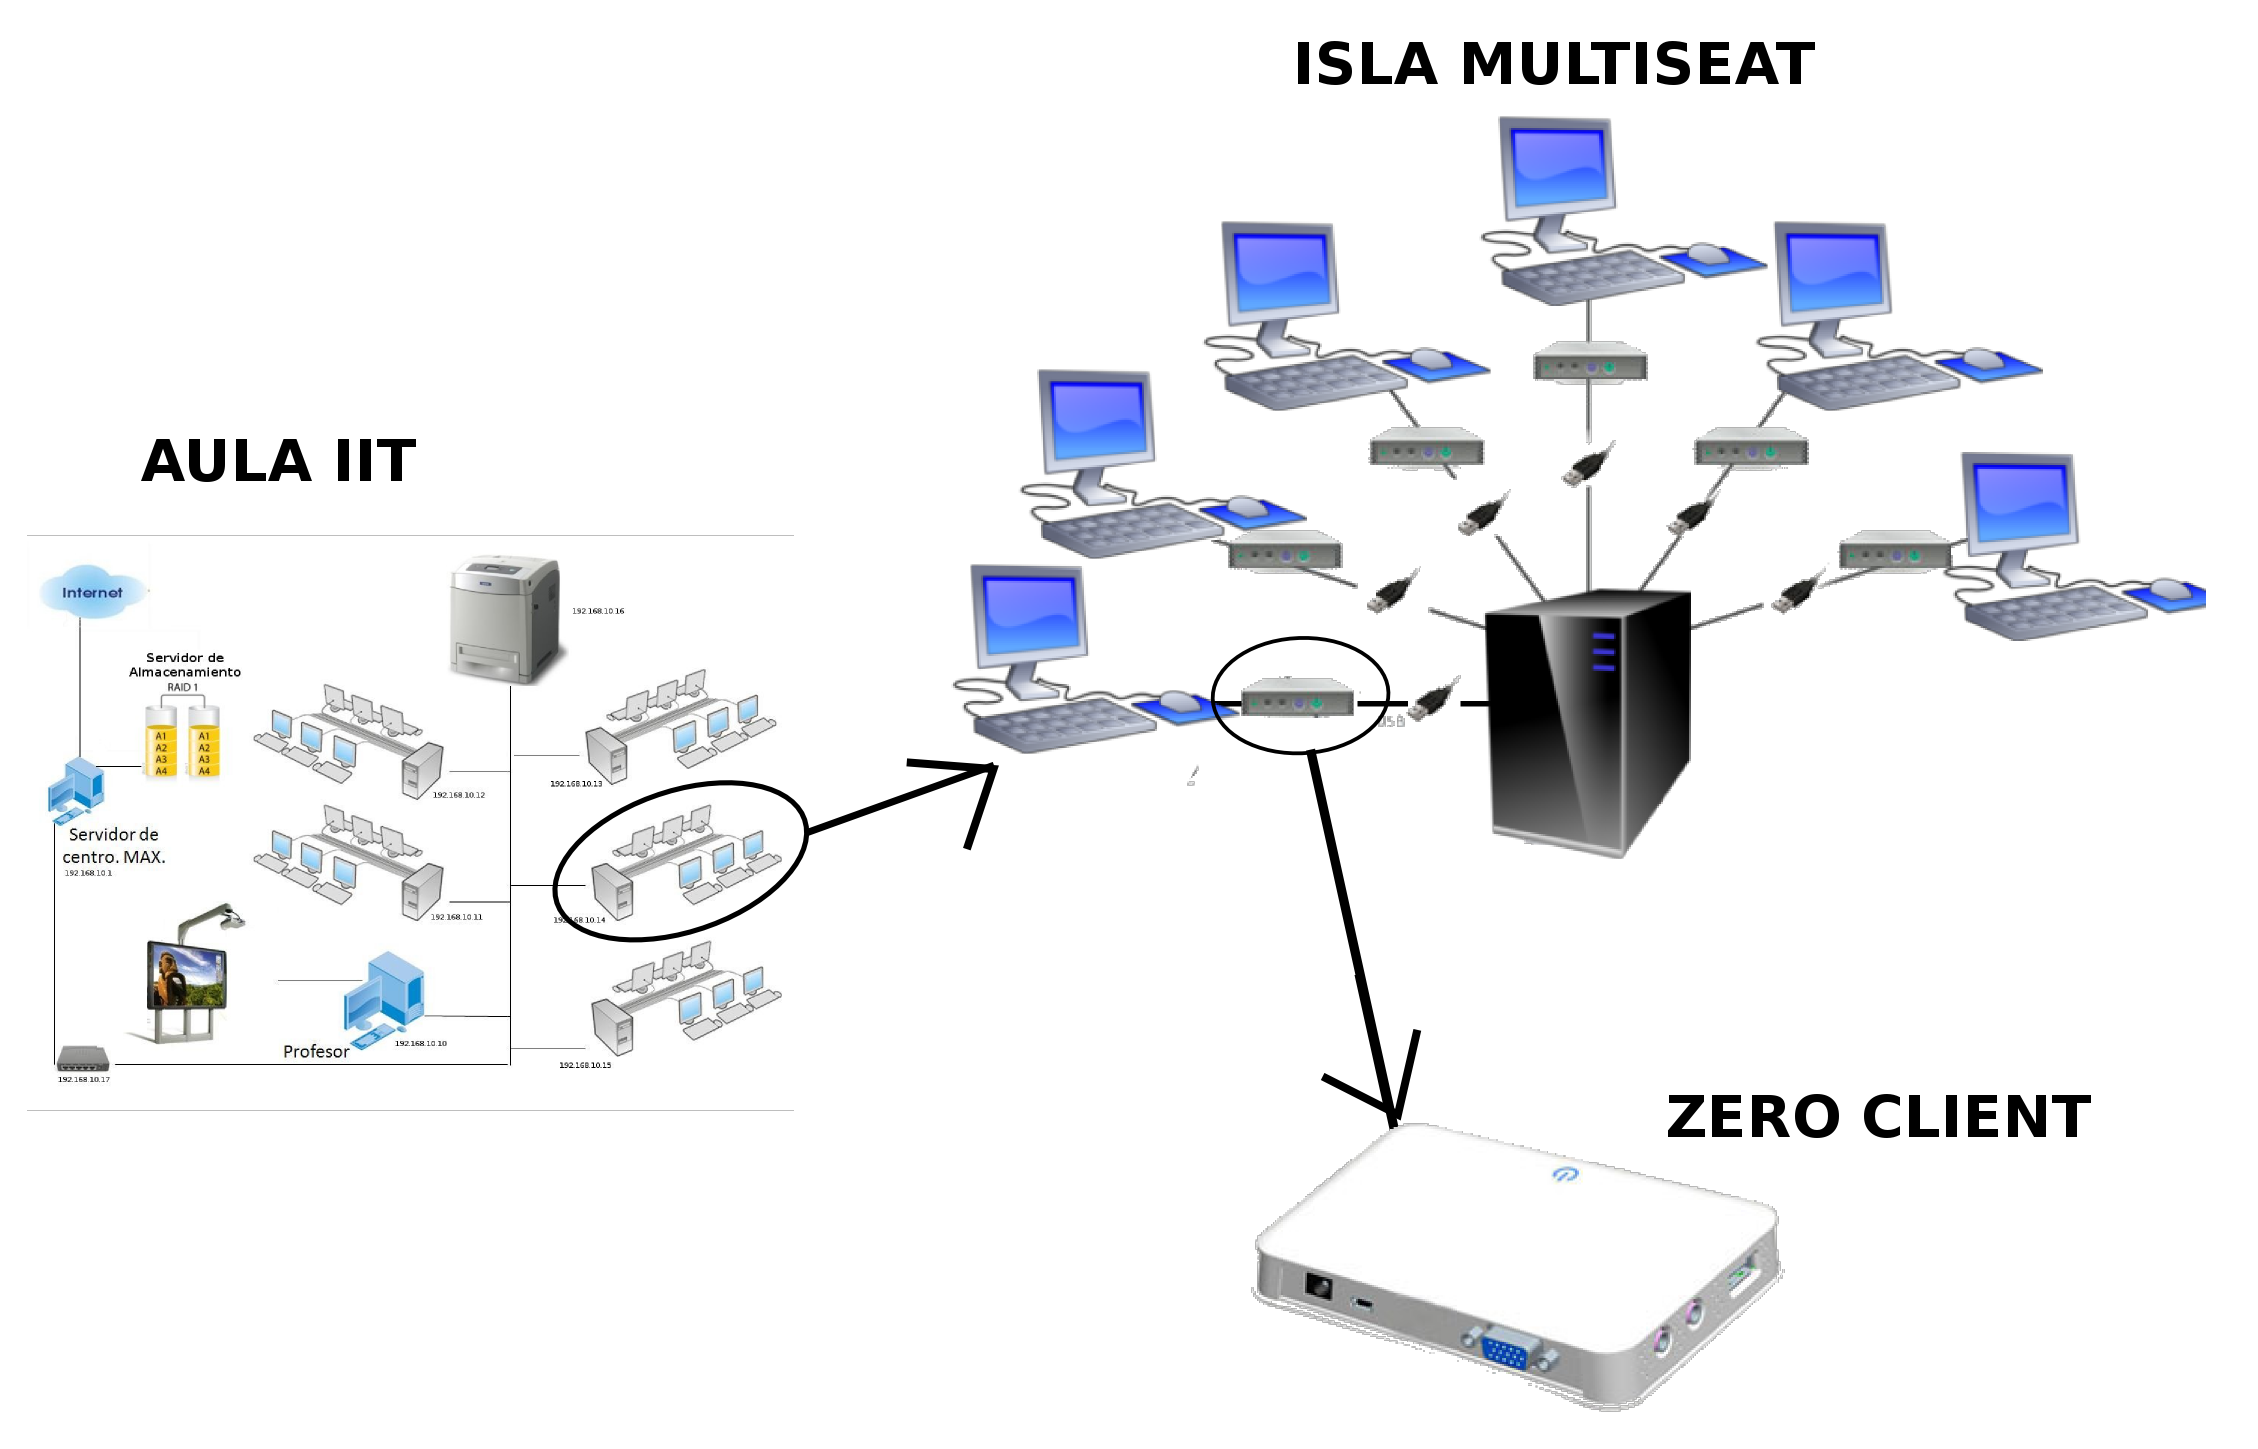 Isla Multiseat con 6 estaciones conectadas a un único ordenador.